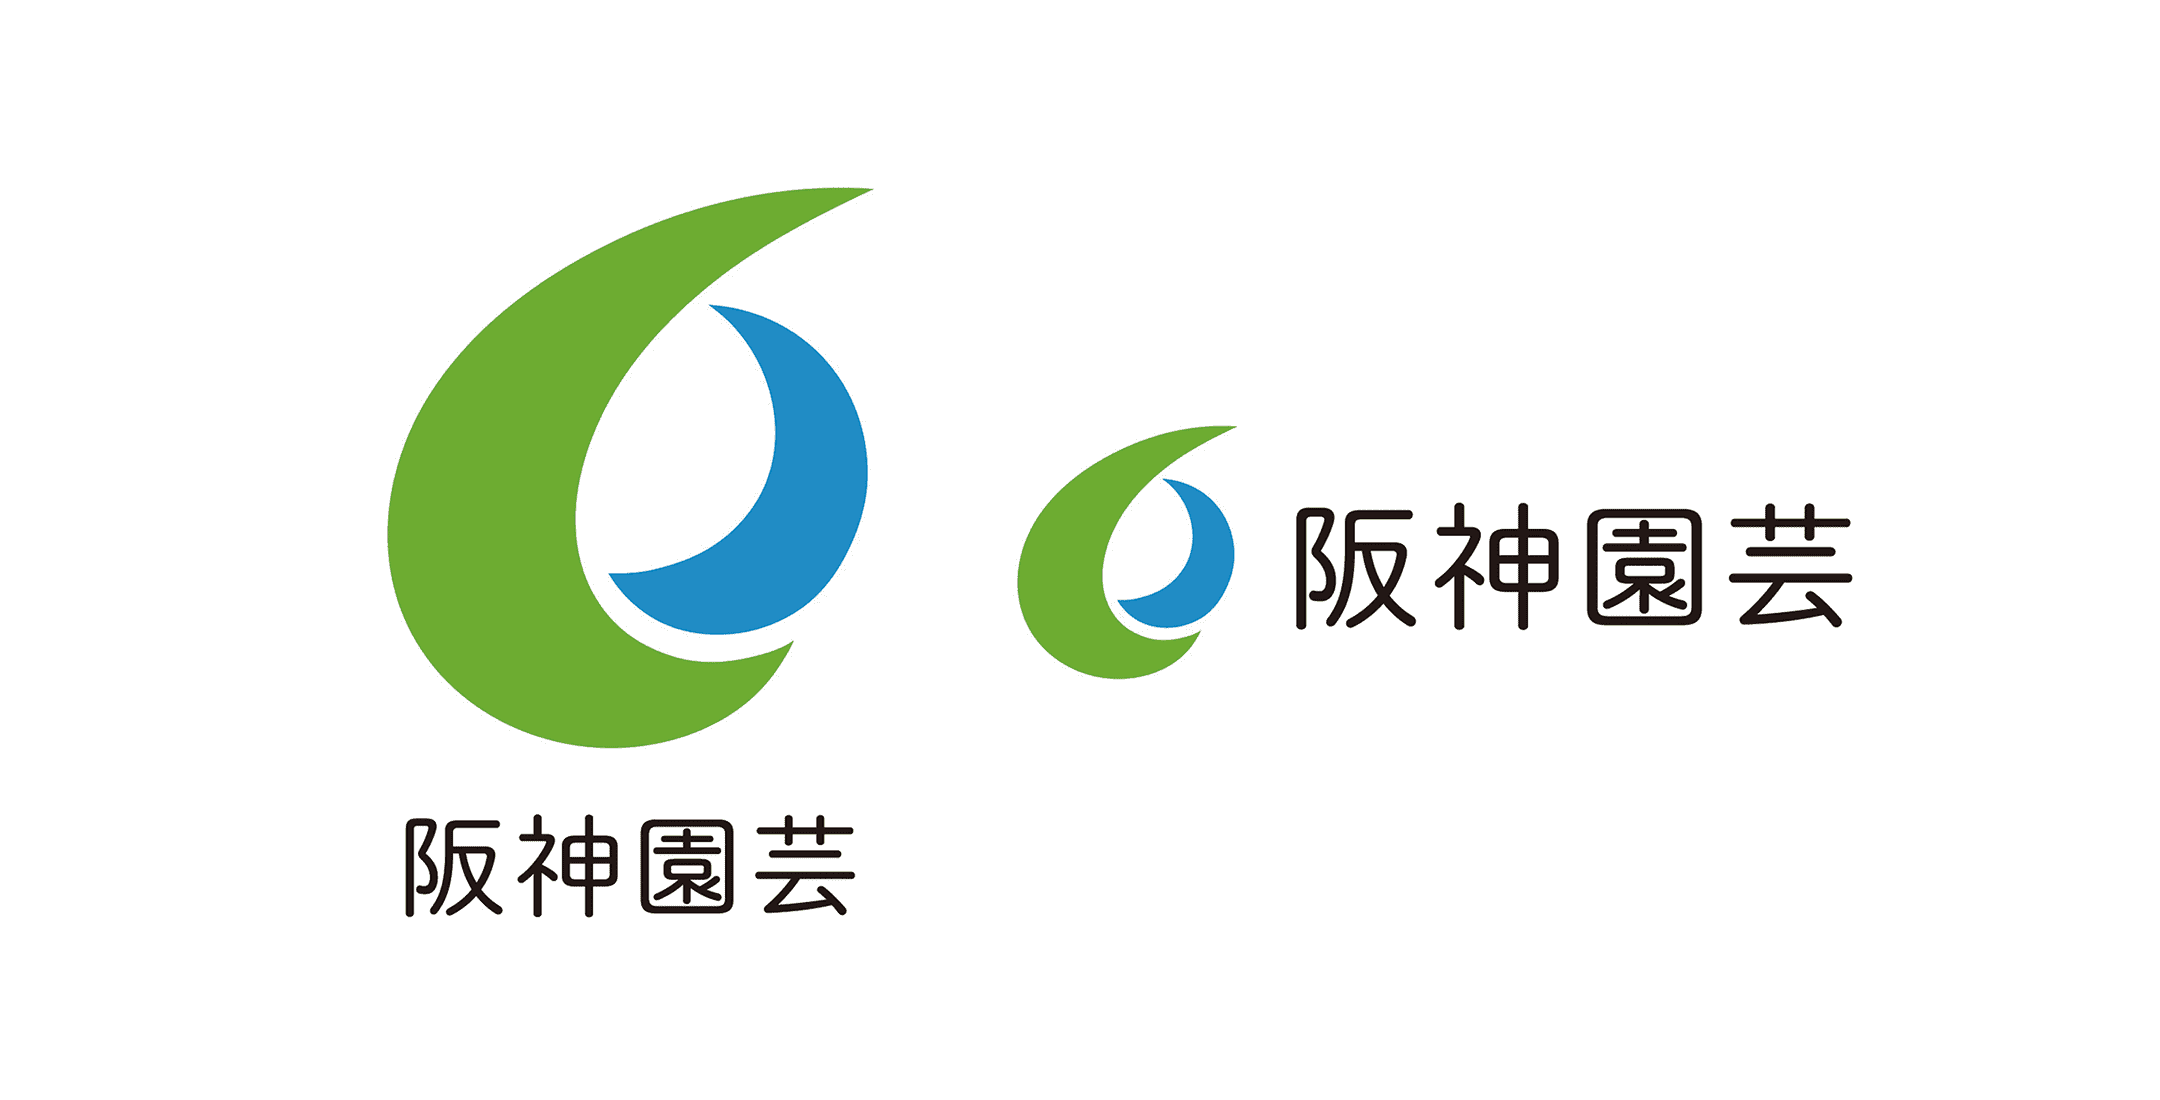 阪神園芸株式会社さま – 企業ロゴ制作